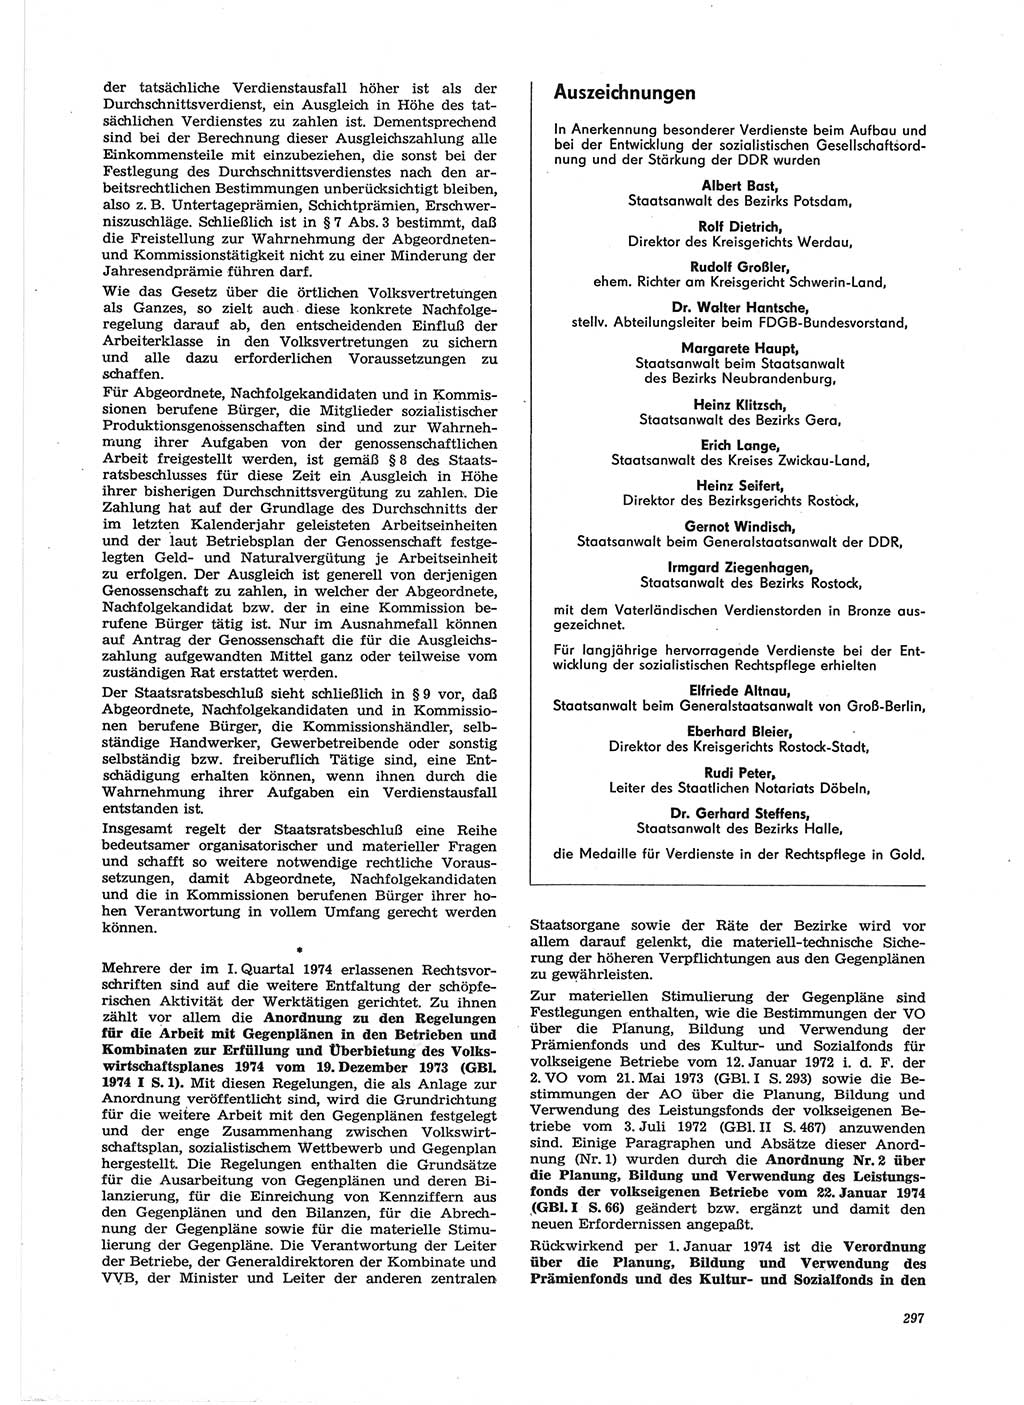 Neue Justiz (NJ), Zeitschrift für Recht und Rechtswissenschaft [Deutsche Demokratische Republik (DDR)], 28. Jahrgang 1974, Seite 297 (NJ DDR 1974, S. 297)